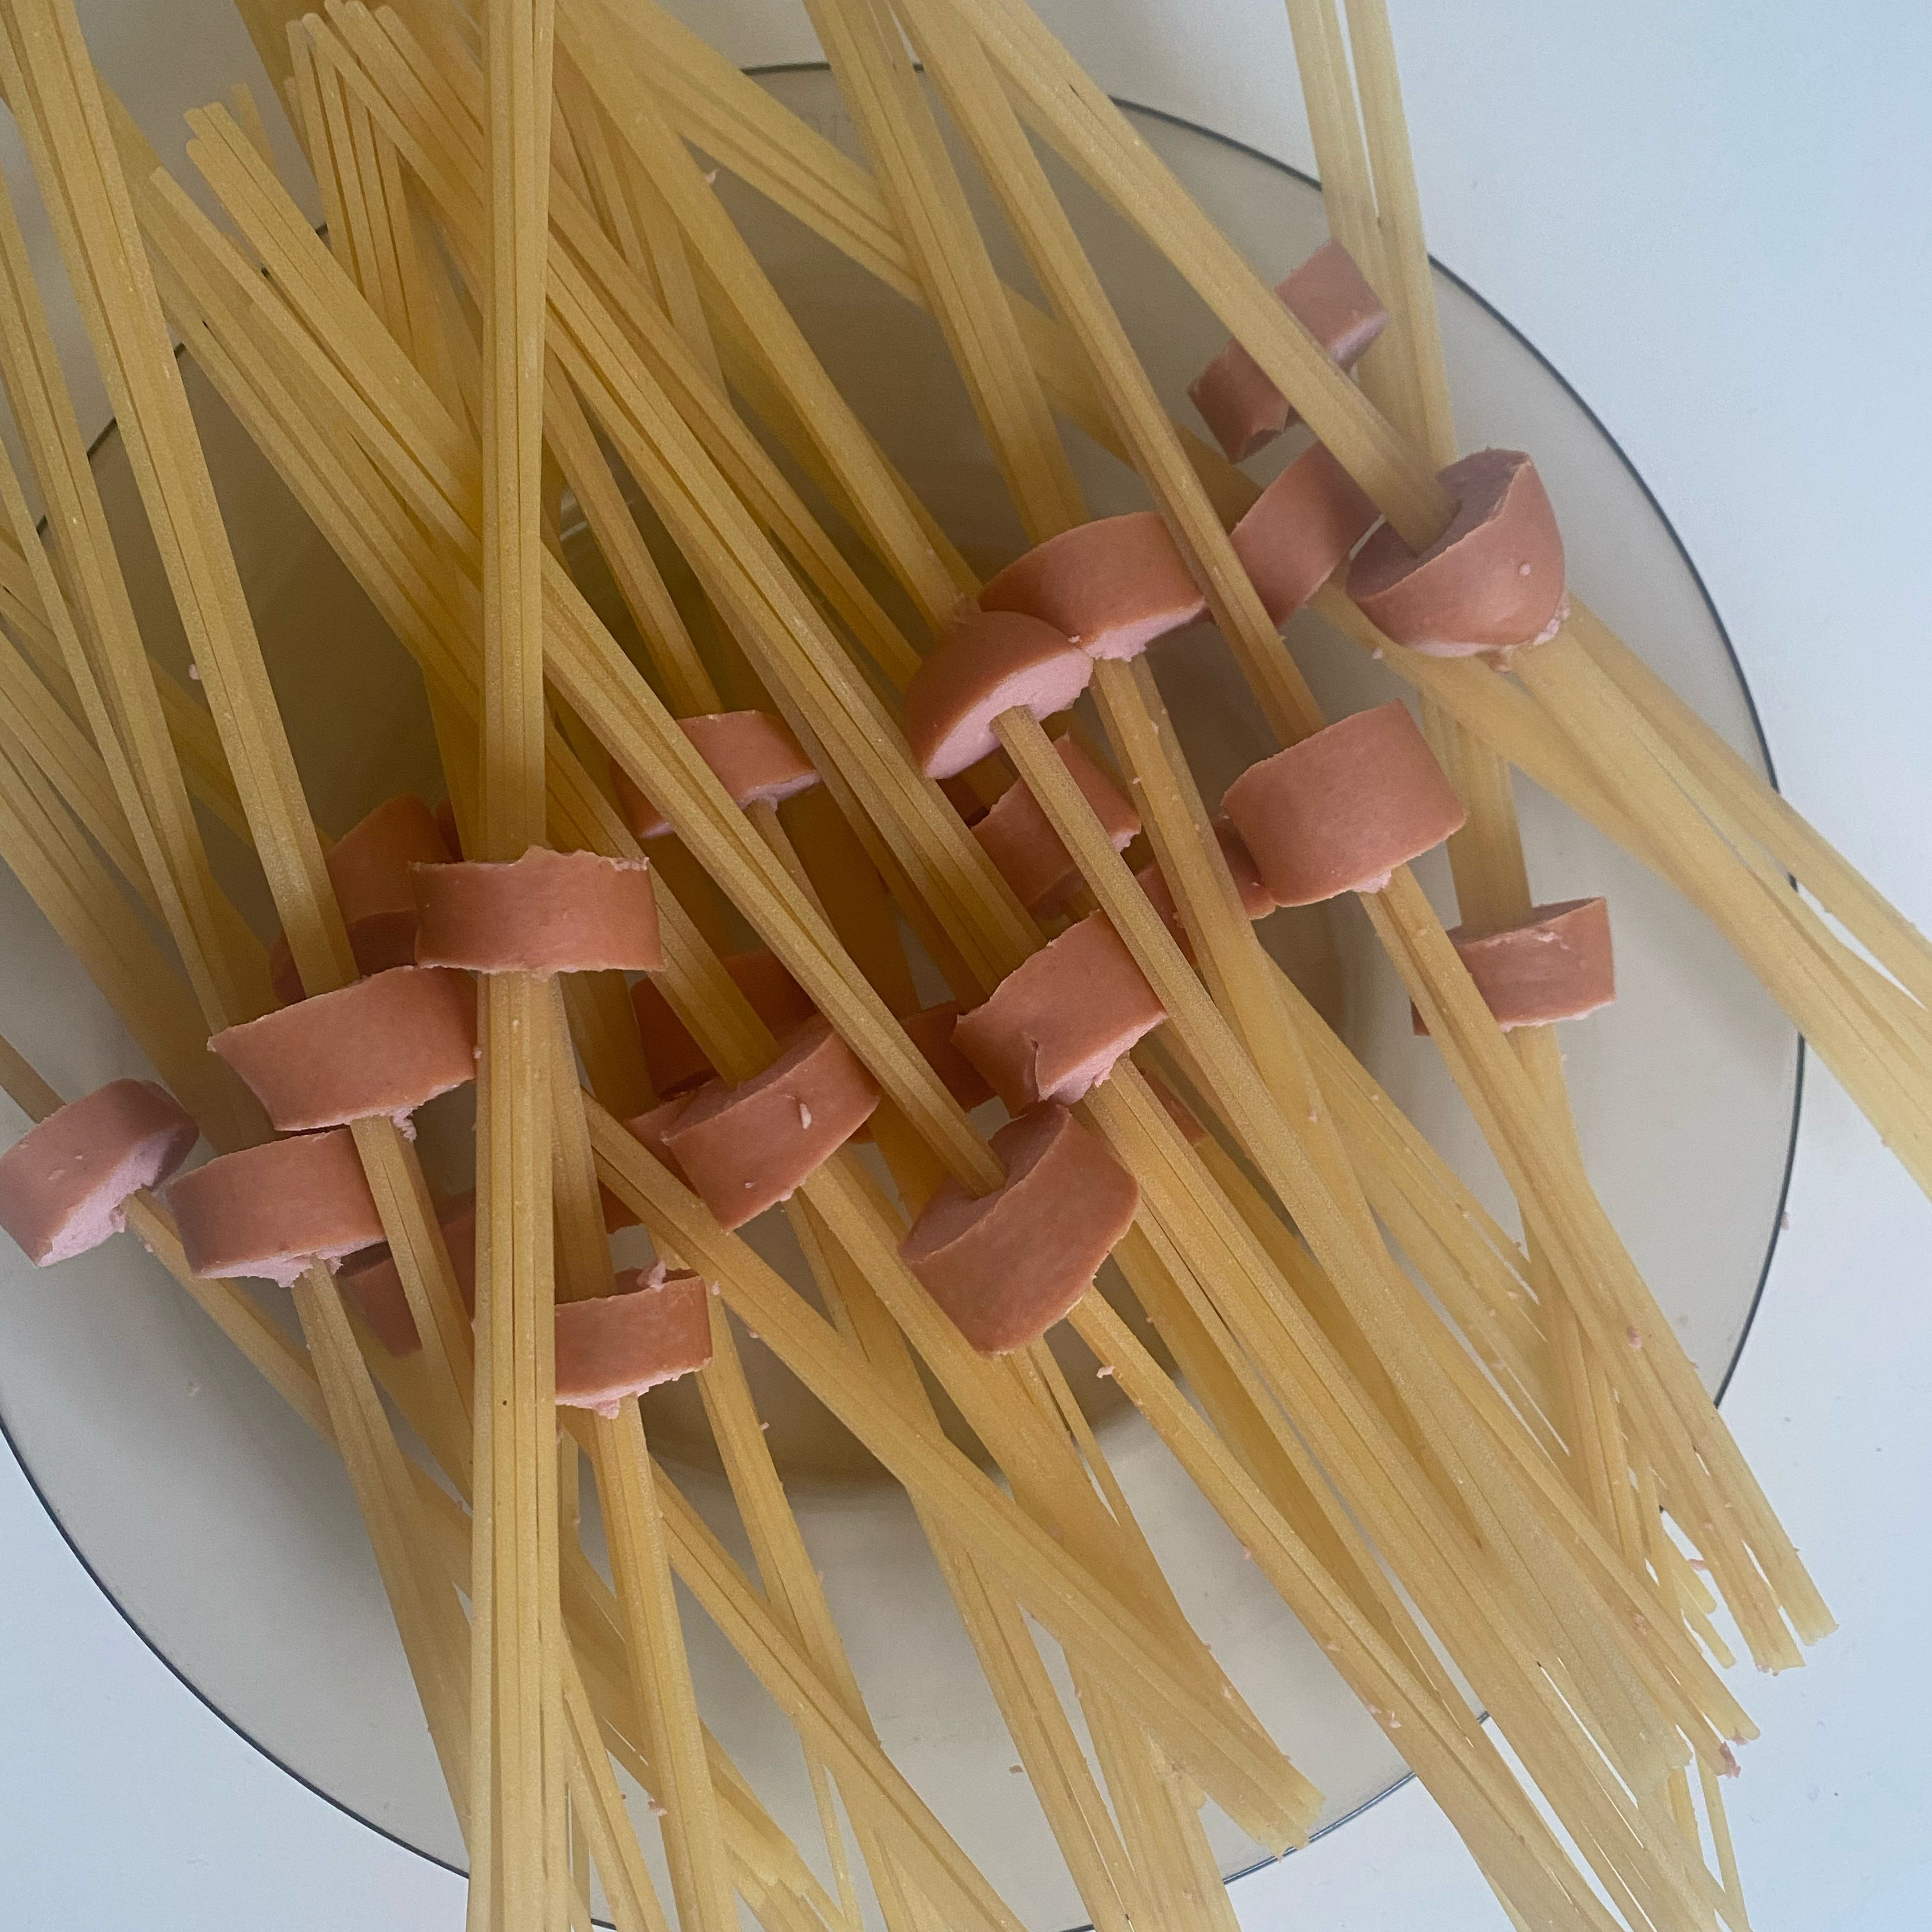 Frankfurter in cm dicke Stücke schneiden und pro Stück ca. 5-8 Spaghetti durchstecken. Wenn in jedem Frankfurter-Stück Spaghetti durchgesteckt sind, Wasser aufstellen um Frankfurter-Spaghetti in Salzwasser zu kochen. Restliche Nudeln einfach mitkochen.